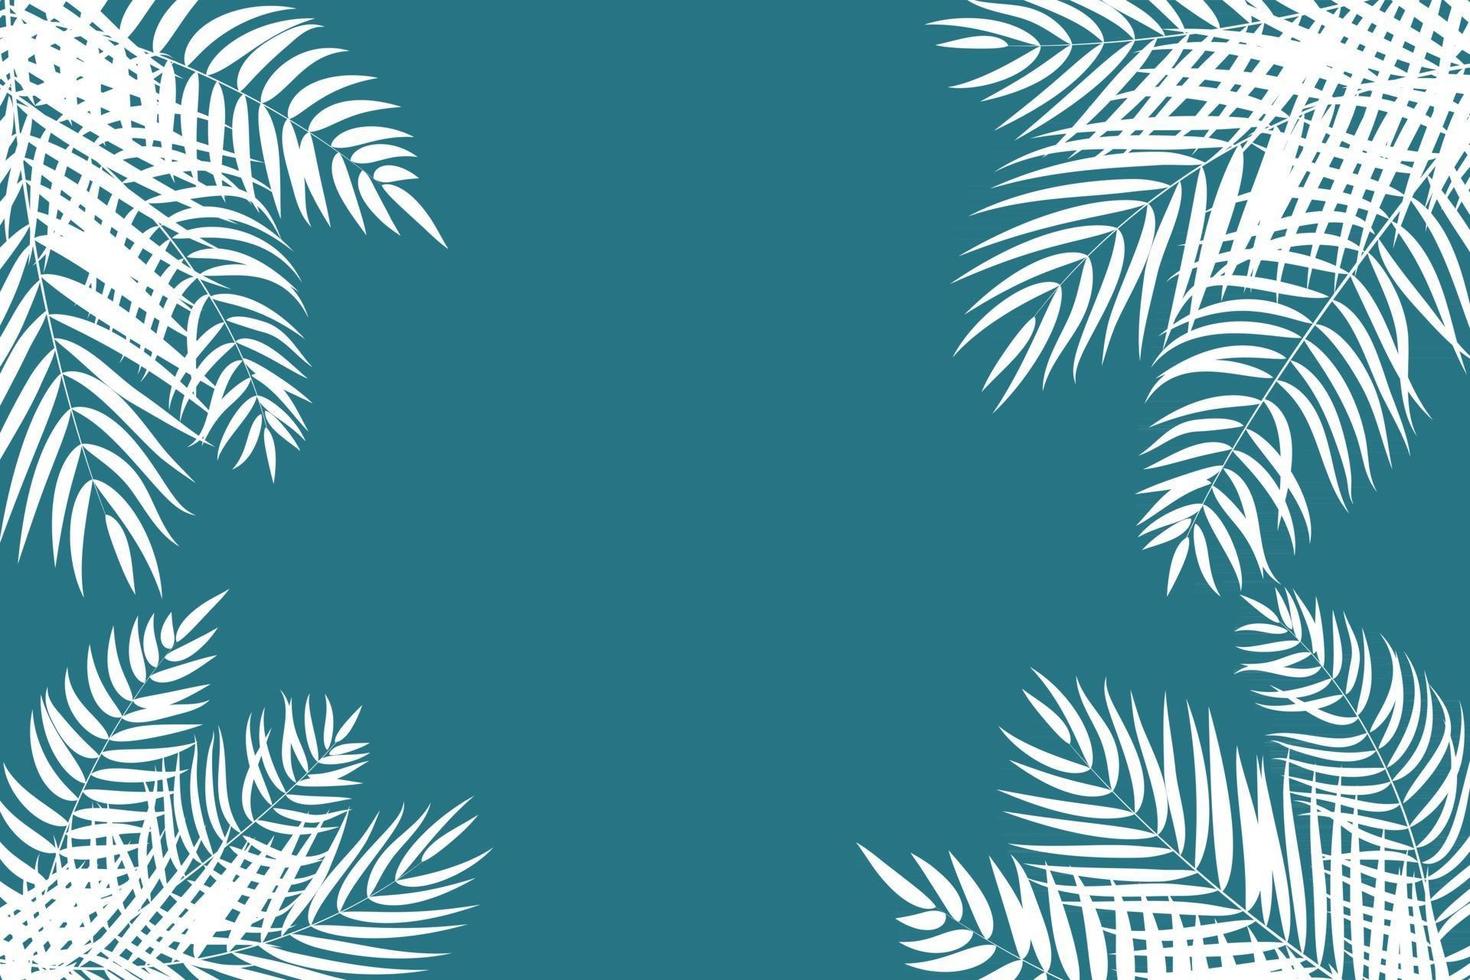 Ilustración de vector de fondo de silueta de hojas de palmera hermosa